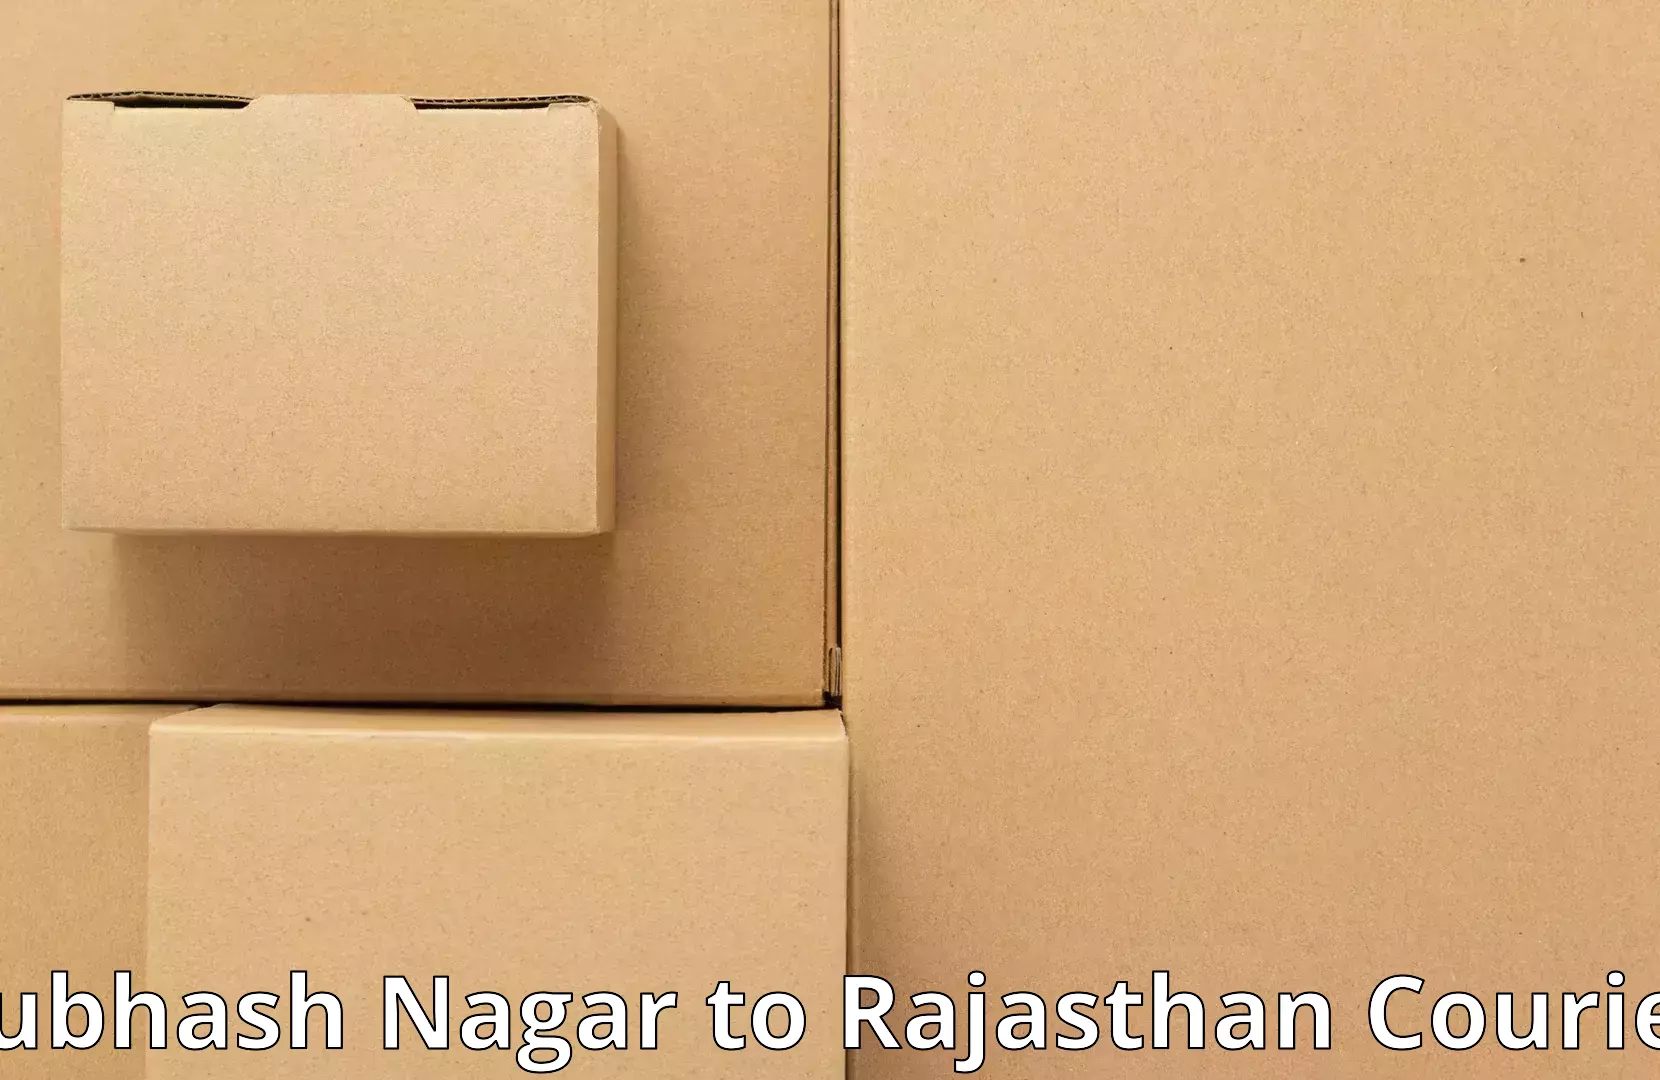 Furniture transport experts Subhash Nagar to Ras Pali